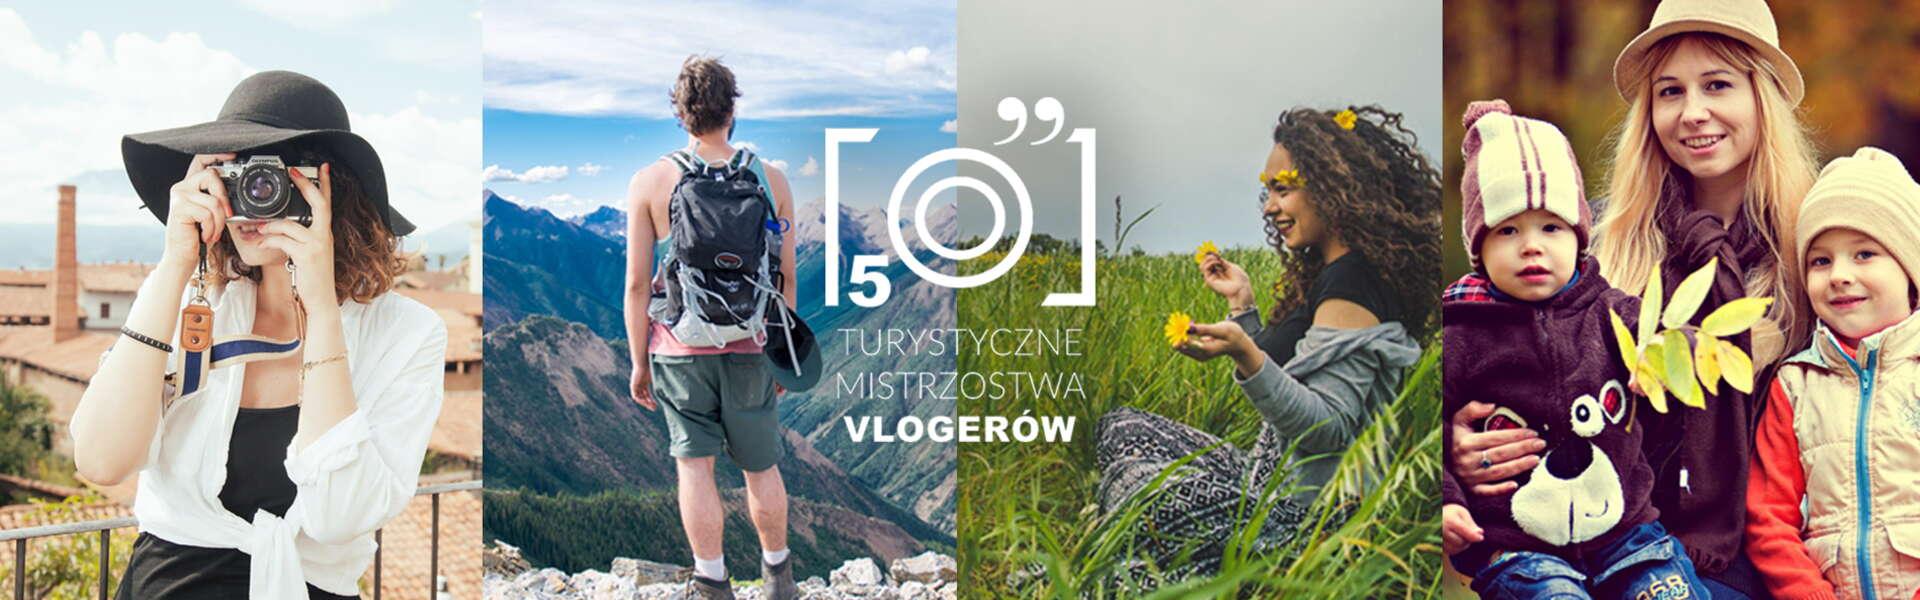 Bild: Zagłosuj na Małopolskę - V Turystyczne Mistrzostwa Vlogerów!